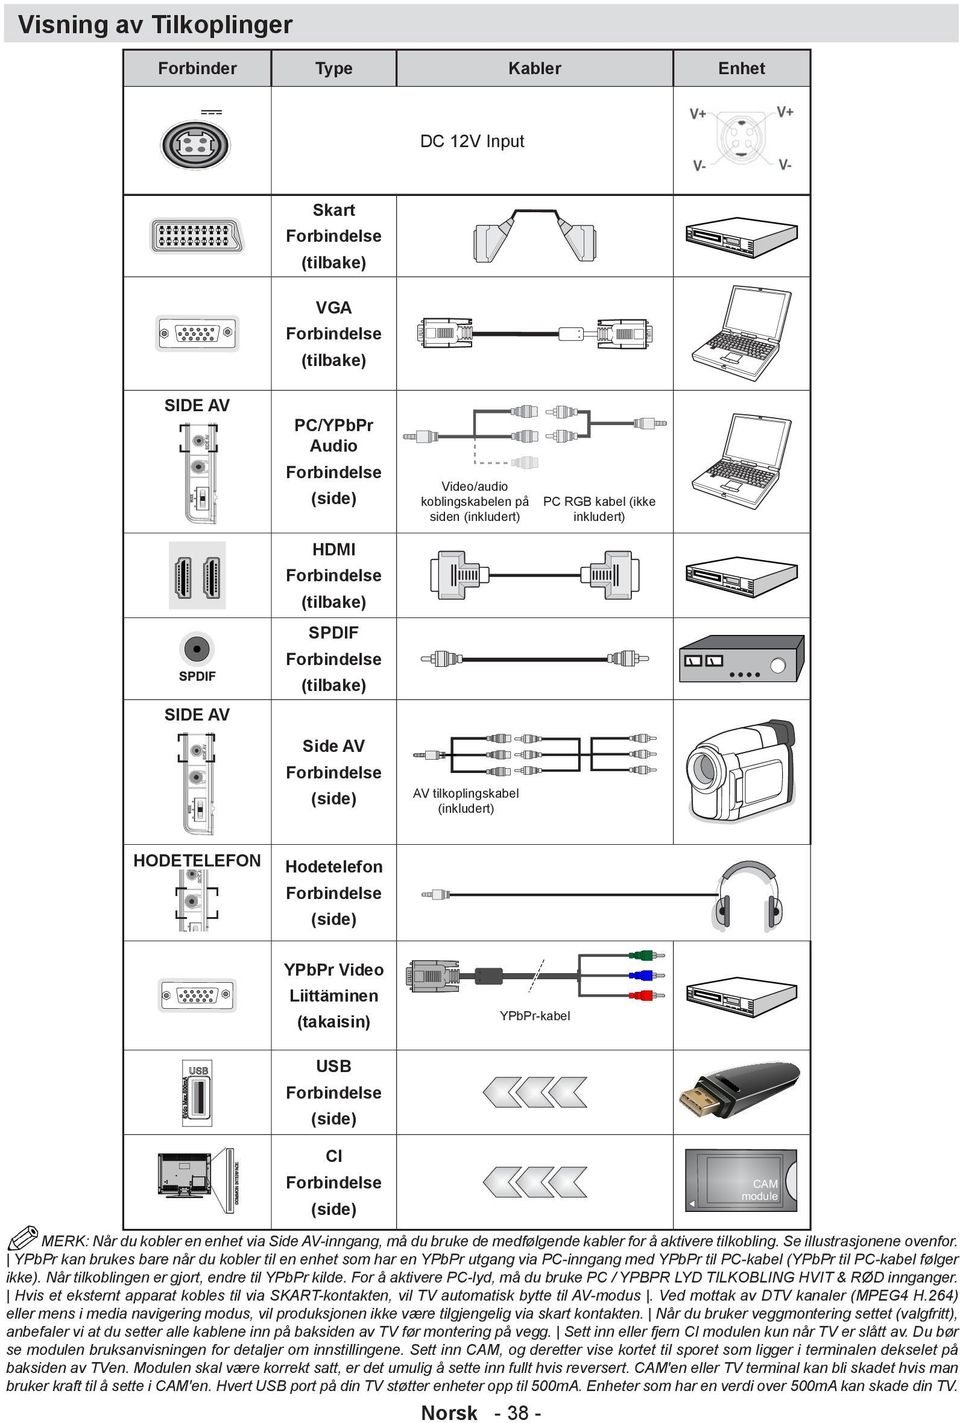 Forbindelse (side) YPbPr Video Liittäminen (takaisin) USB Forbindelse (side) YPbPr-kabel CI Forbindelse (side) MERK: Når du kobler en enhet via Side AV-inngang, må du bruke de medfølgende kabler for